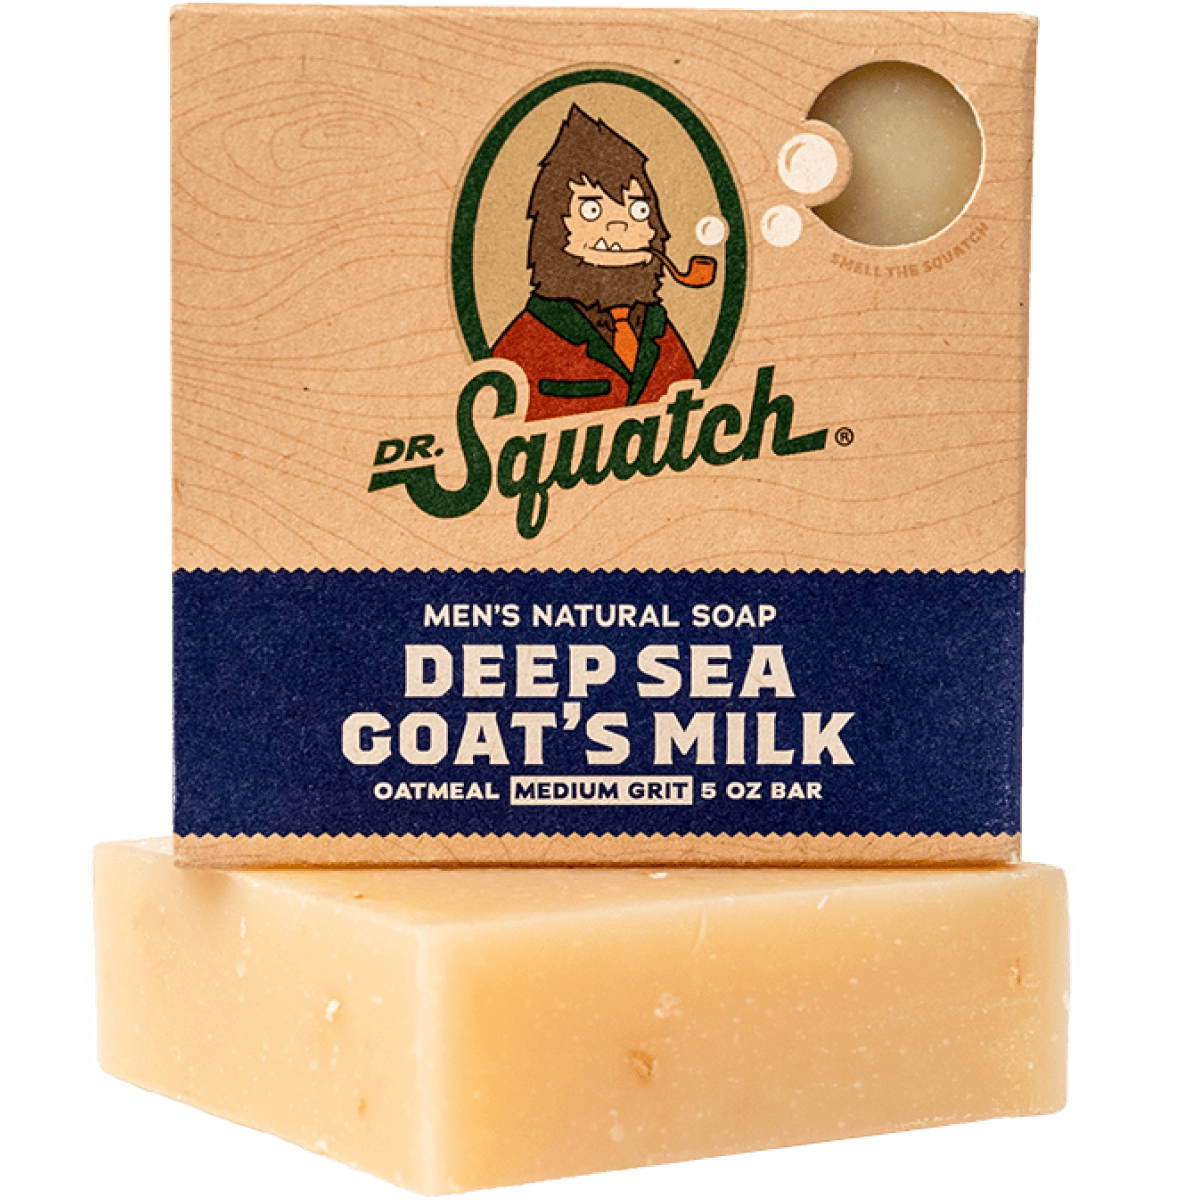 Deep Sea Goat's Milk Bar Soap - 6 Units